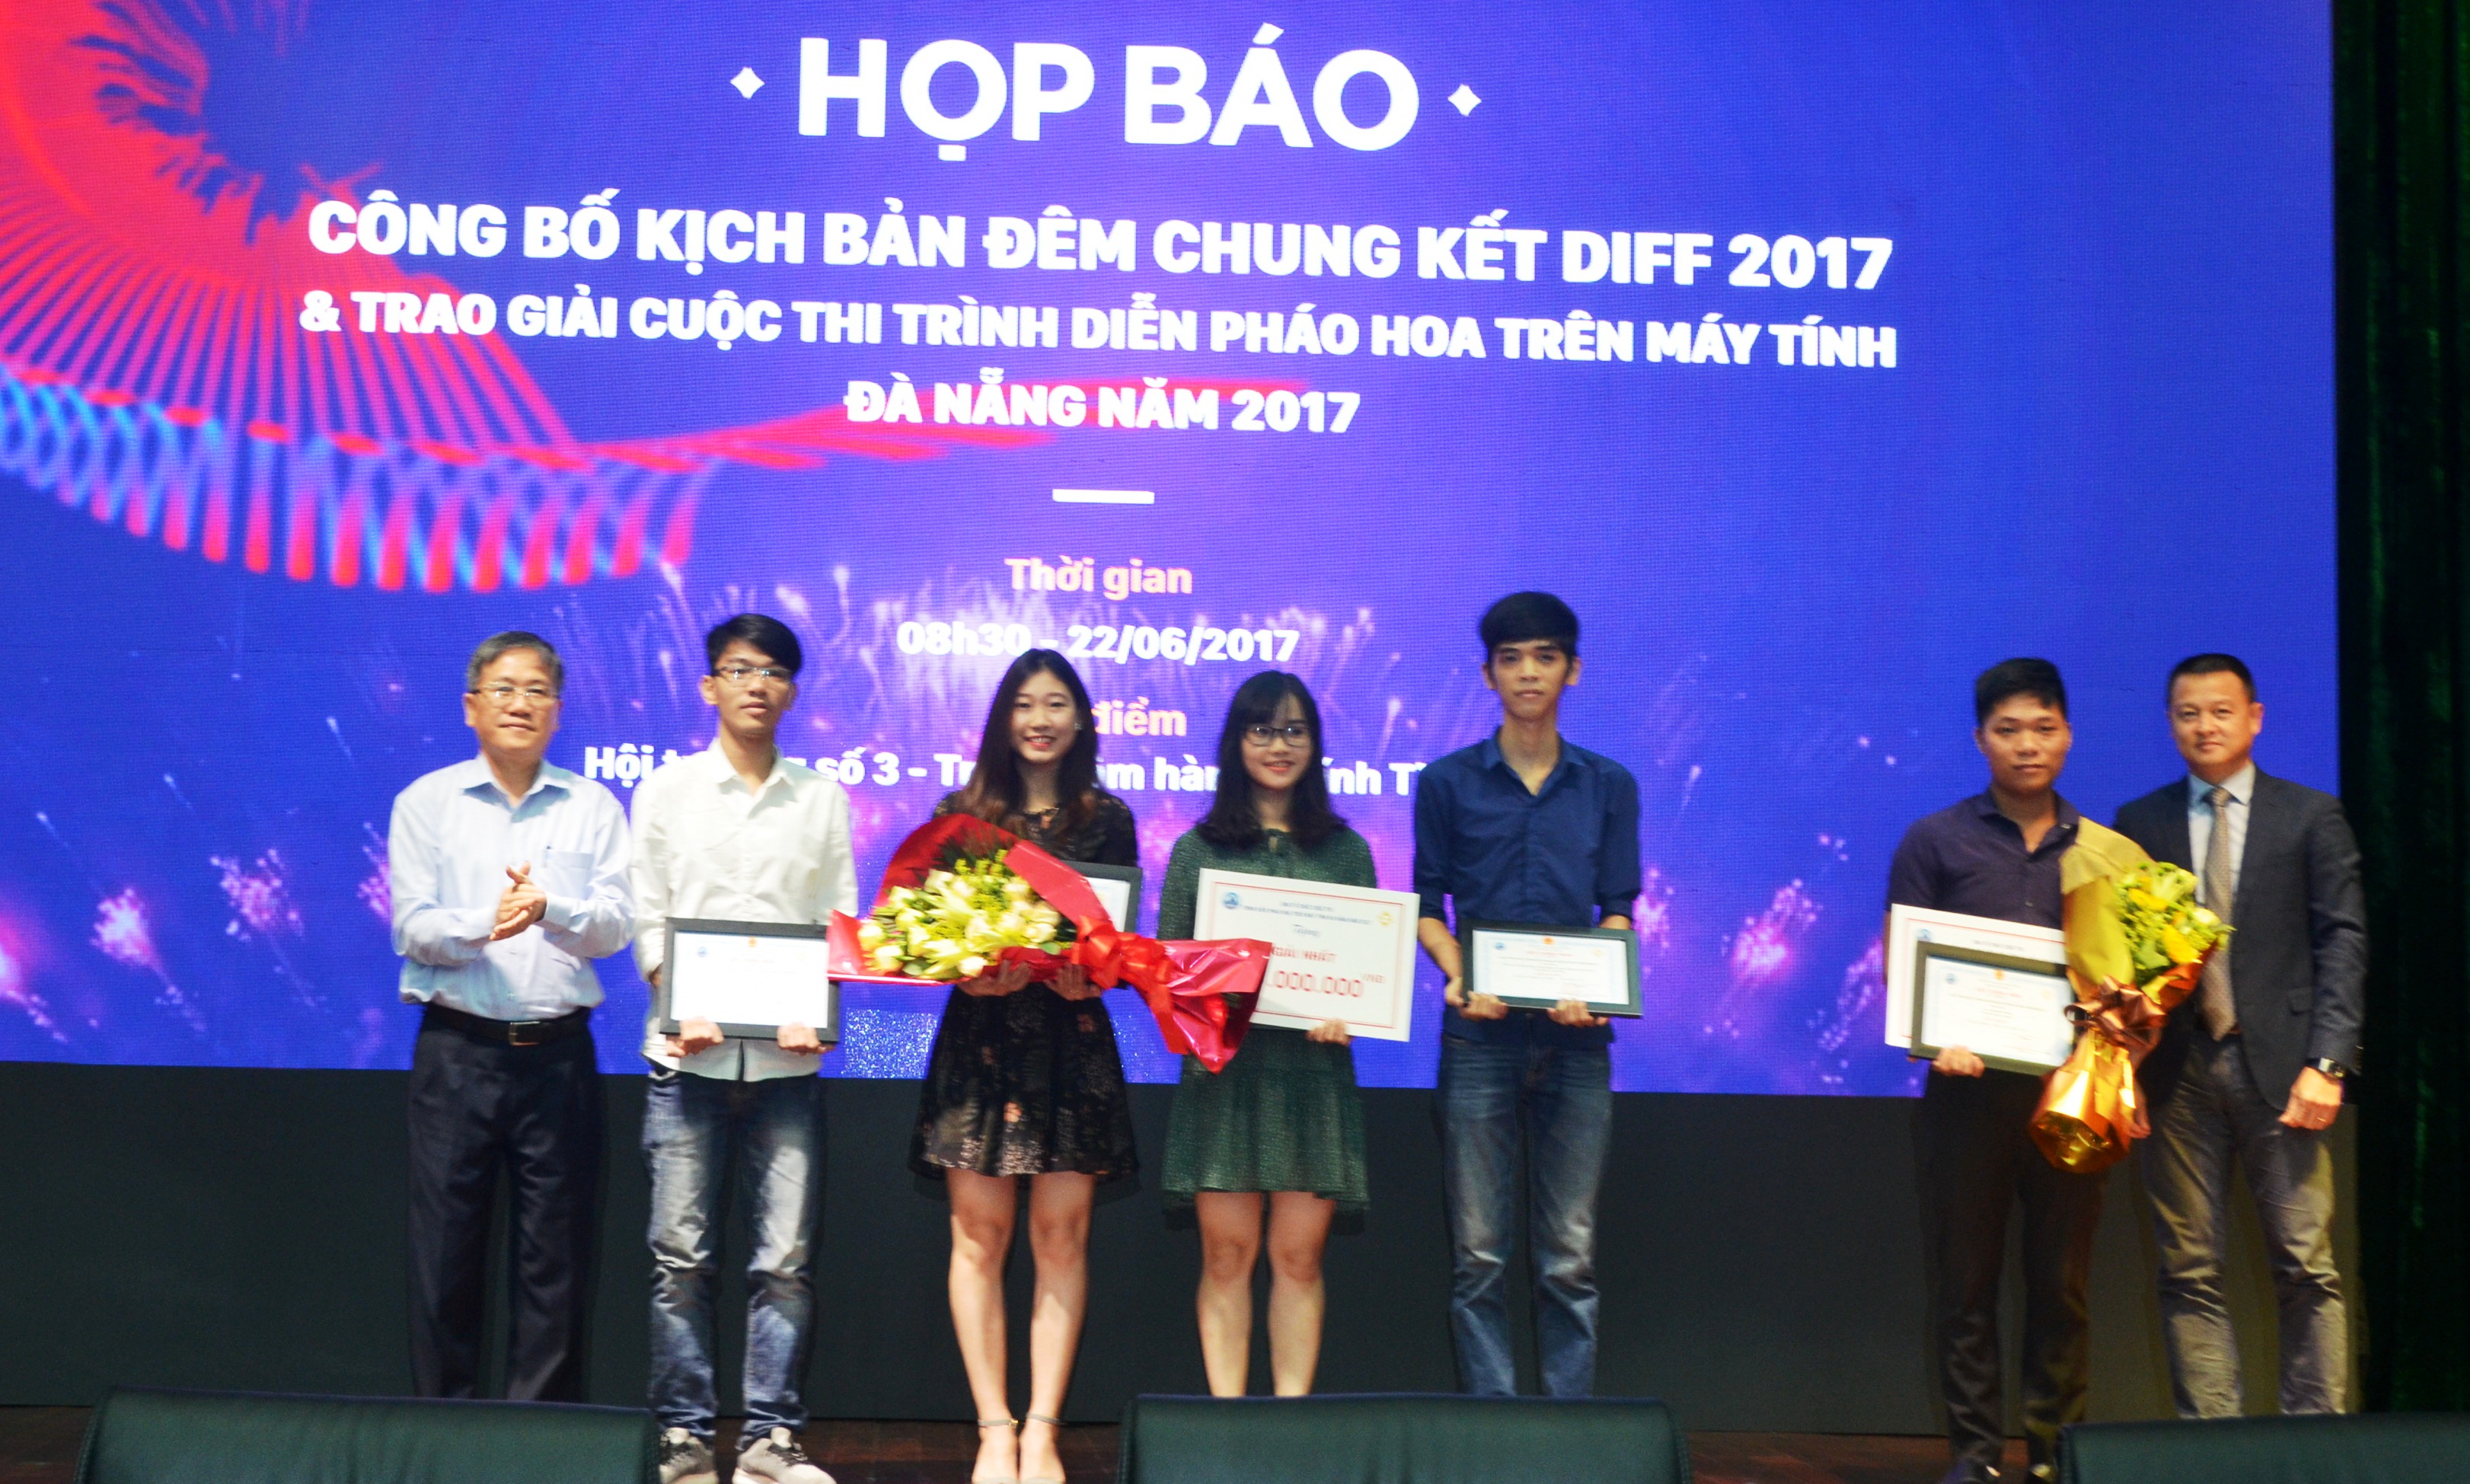 Ban tổ chức DIFF 2017 trao giải cho ba tác phẩm đoạt giải cao nhất cuộc thi Trình diễn pháo hoa trên máy tính 2017.